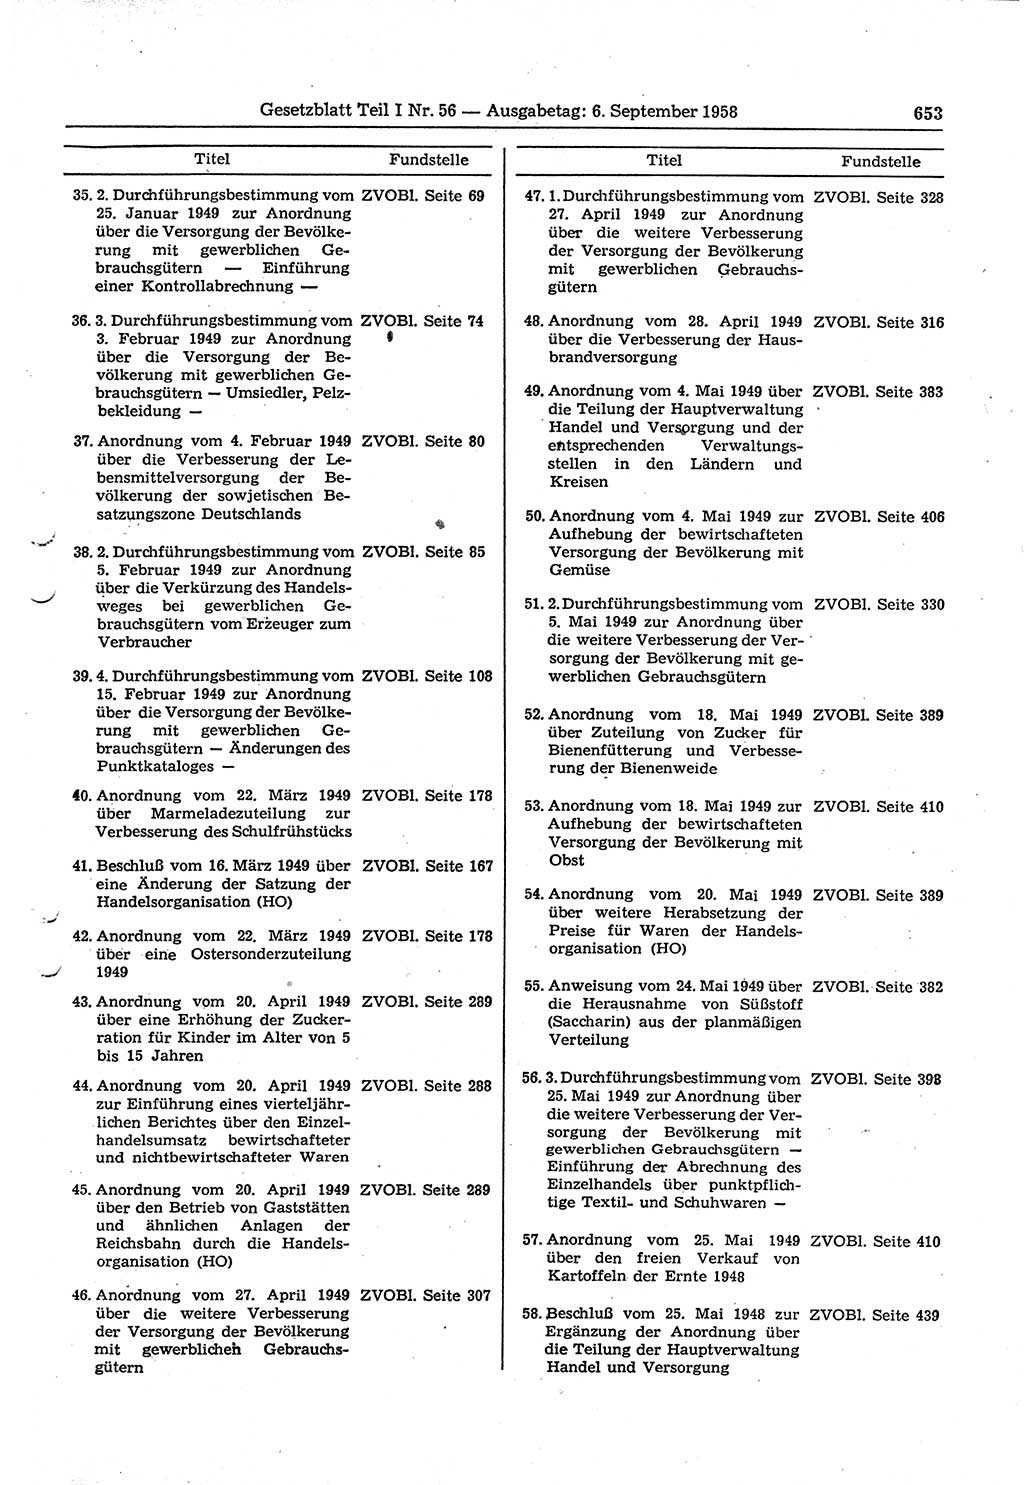 Gesetzblatt (GBl.) der Deutschen Demokratischen Republik (DDR) Teil Ⅰ 1958, Seite 653 (GBl. DDR Ⅰ 1958, S. 653)